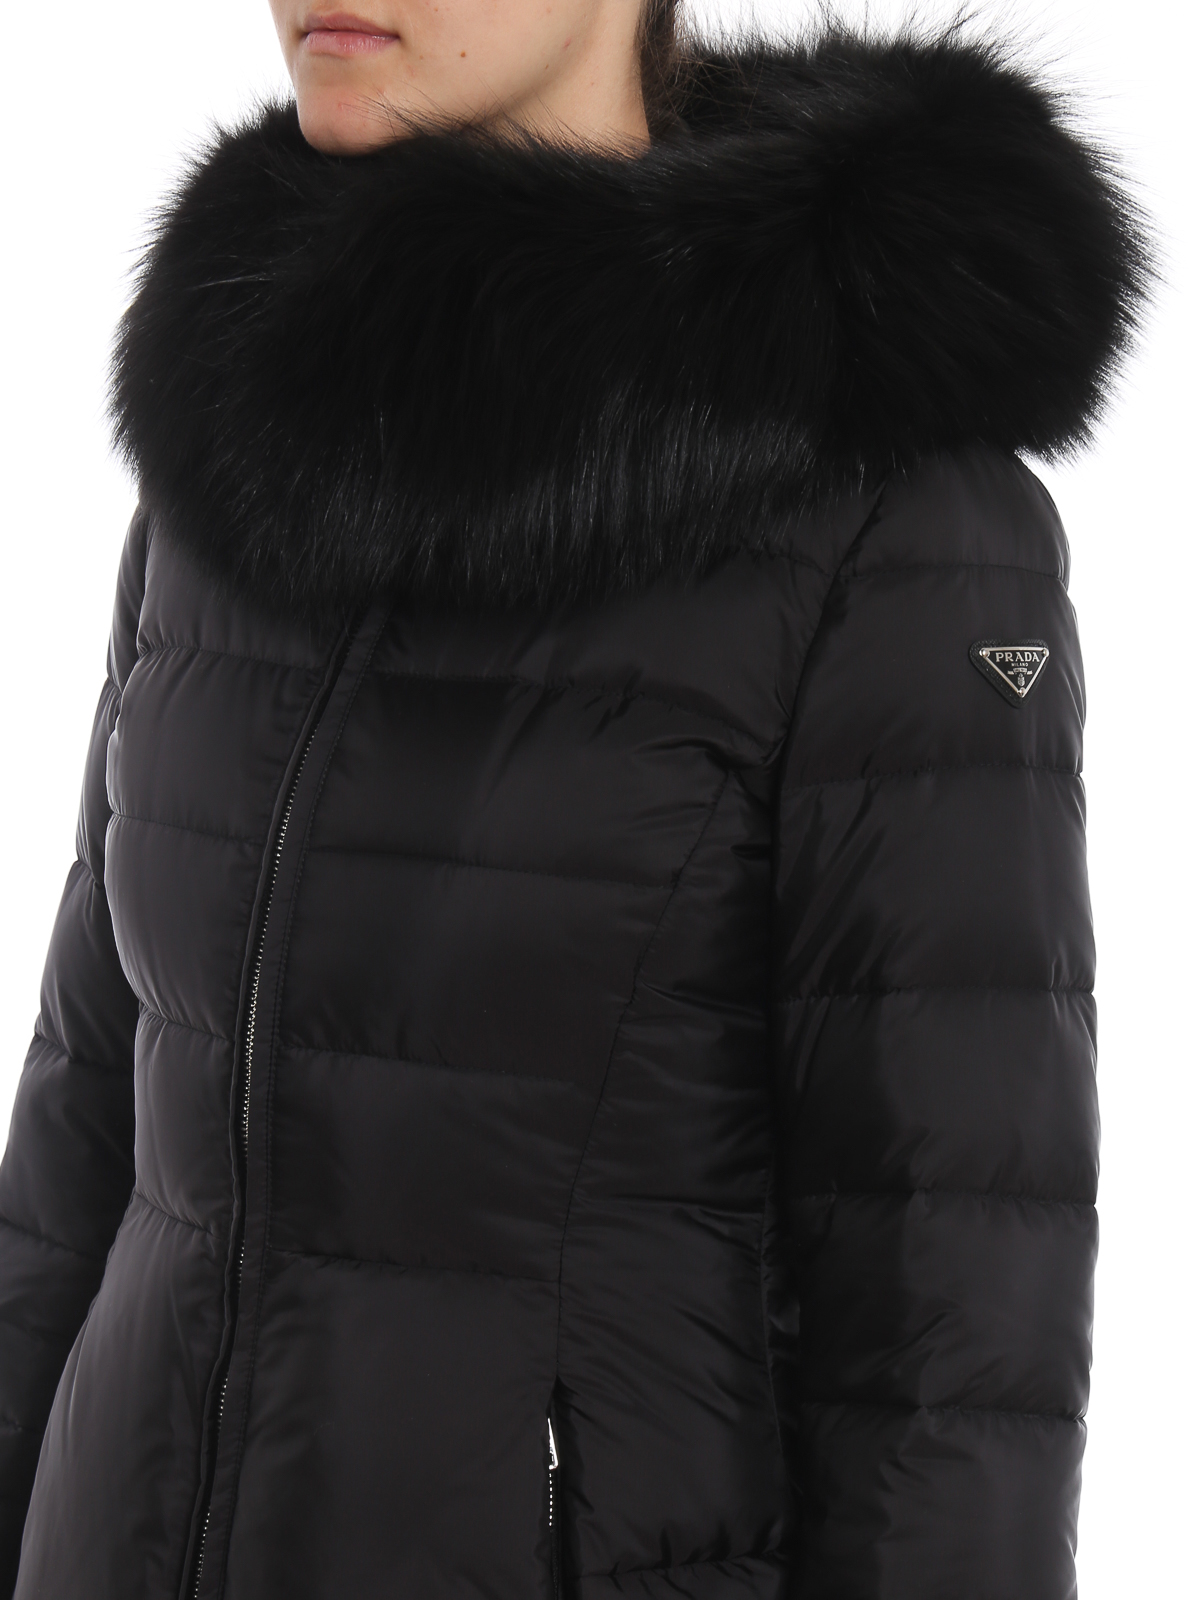 womens prada coat with fur collar